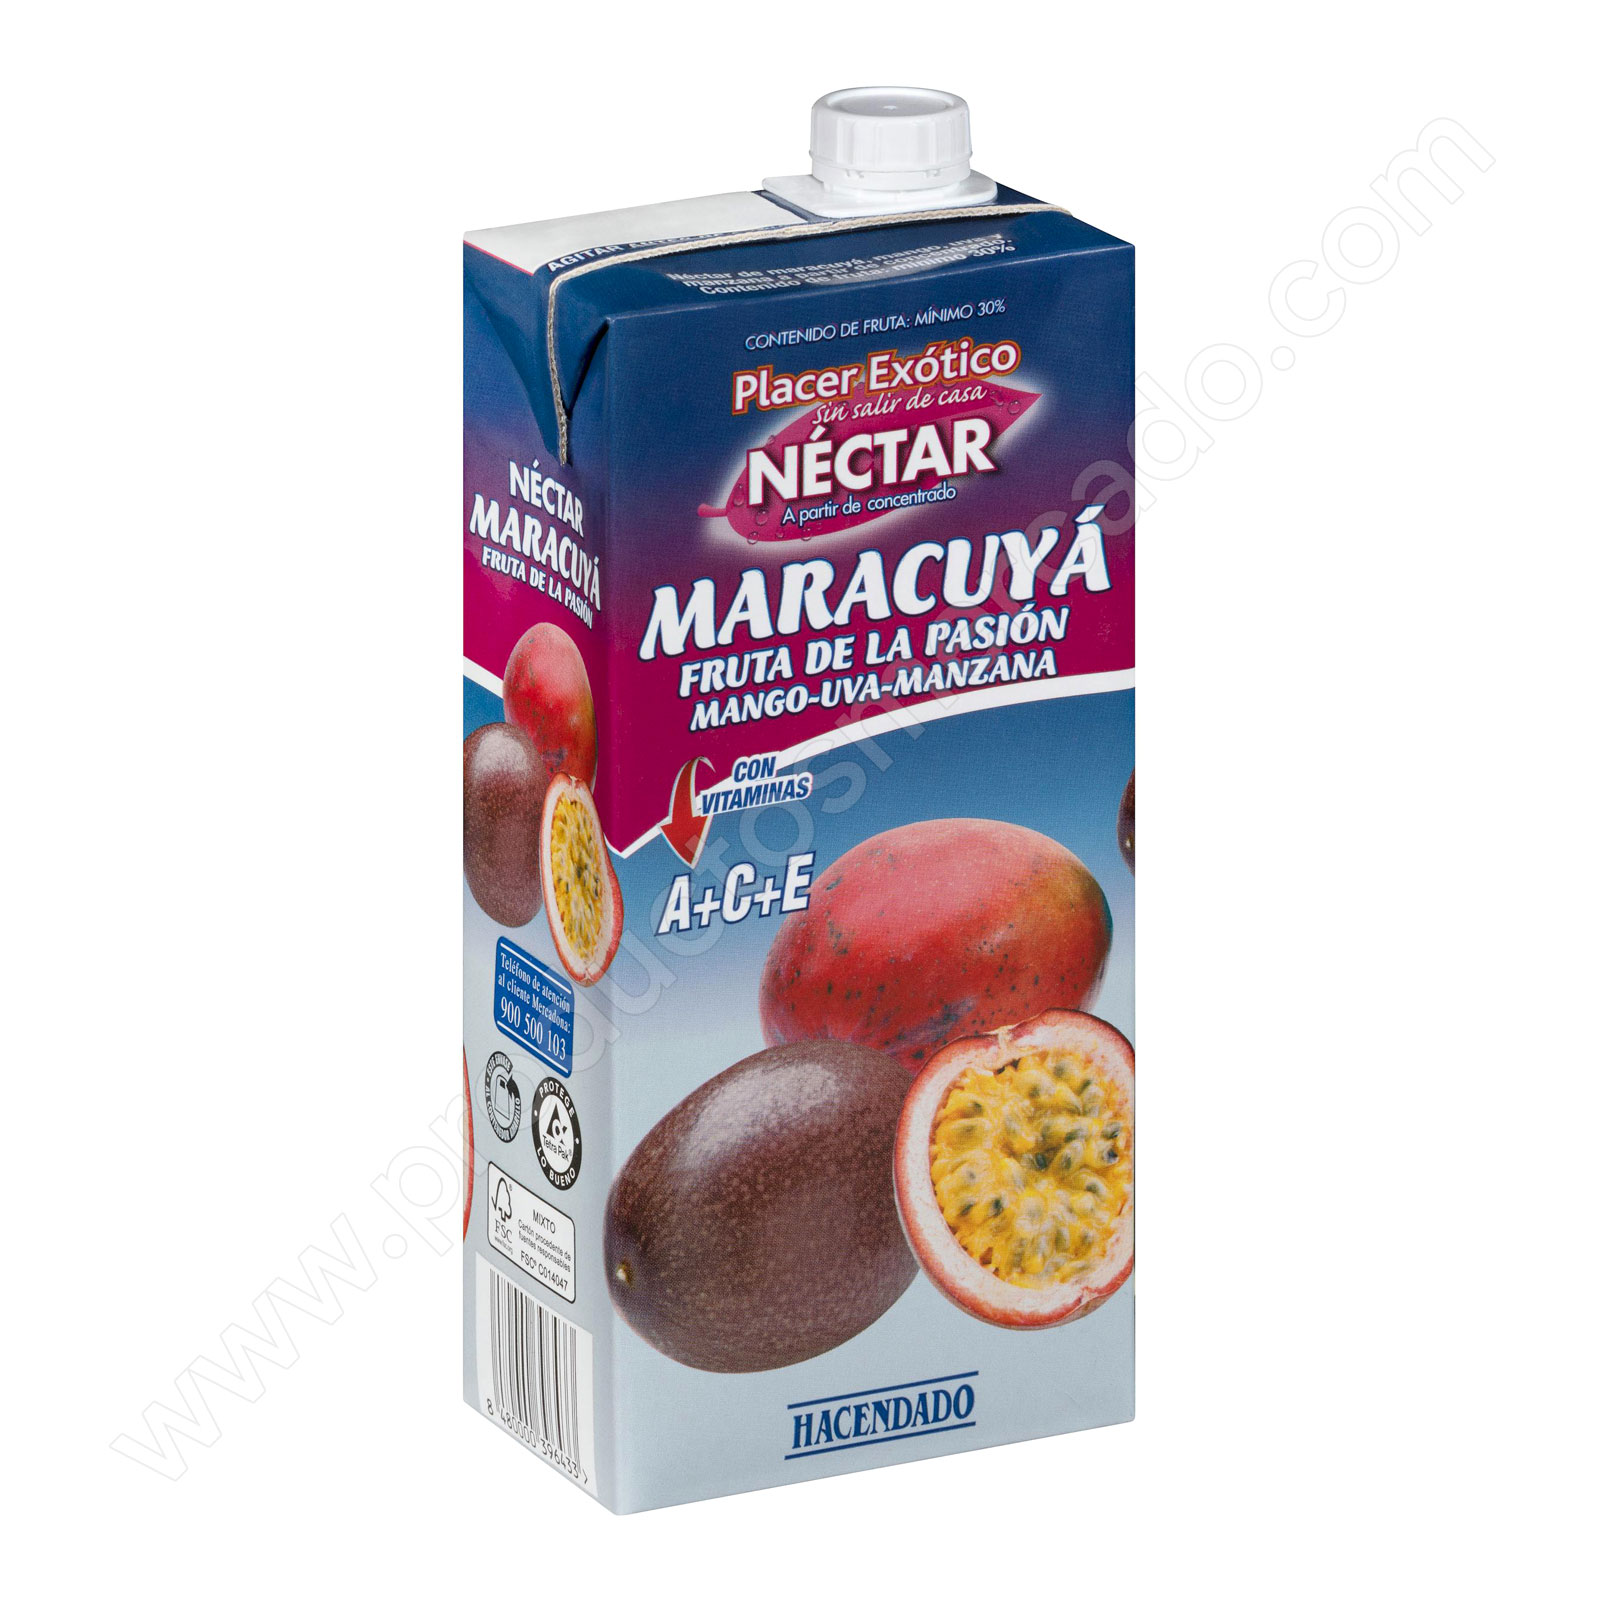 Néctar de maracuyá, fruta de la pasión, mango, uva y manzana Hacendado